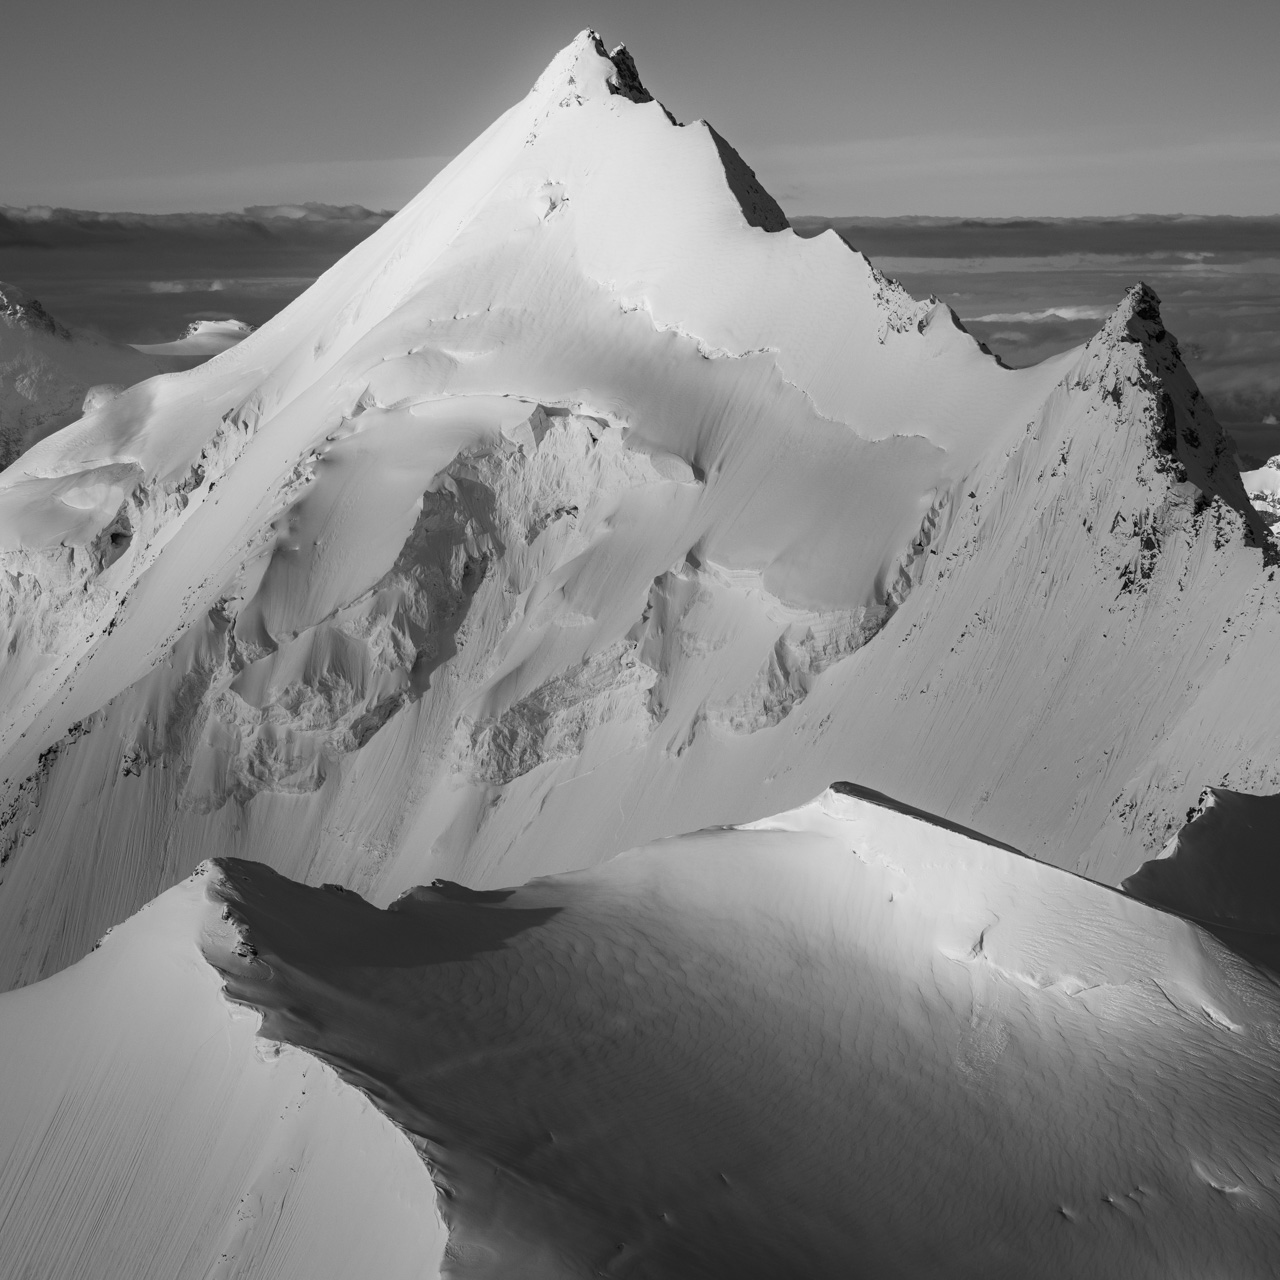 Weisshorn - Bishorn - Poster panoramique de sommets de montagne en noir et blanc dans les alpes valaisannes